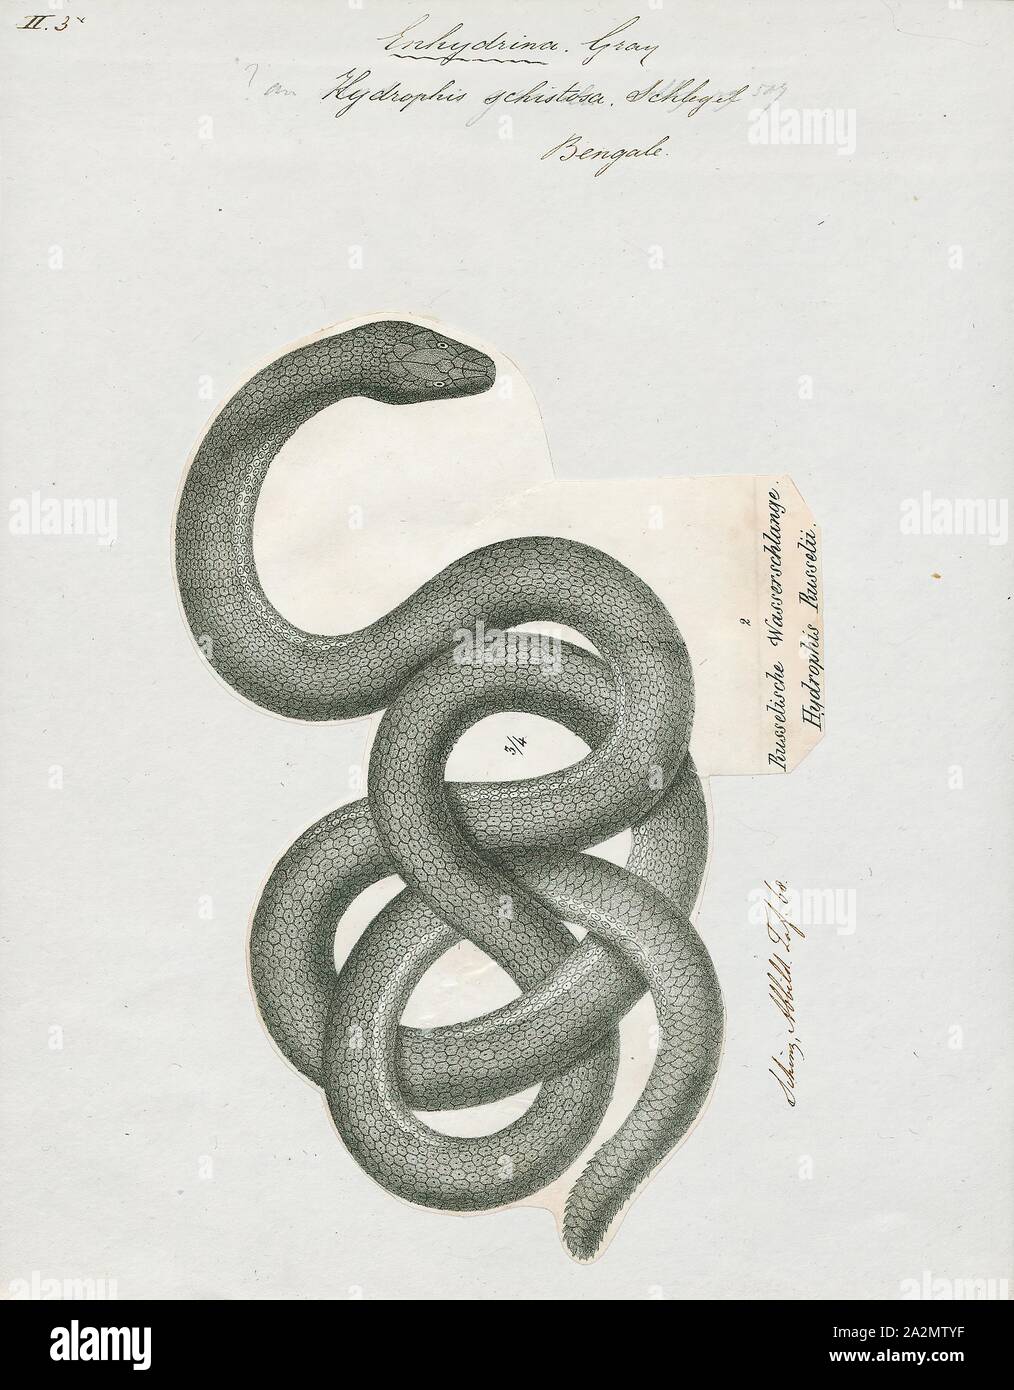 Hydrophis schistosa, Drucken, Hydrophis ist eine Gattung der Seeschlangen. Sie sind in der Regel in Indo-Australian und Südostasiatischen Gewässern gefunden., 1700-1880 Stockfoto